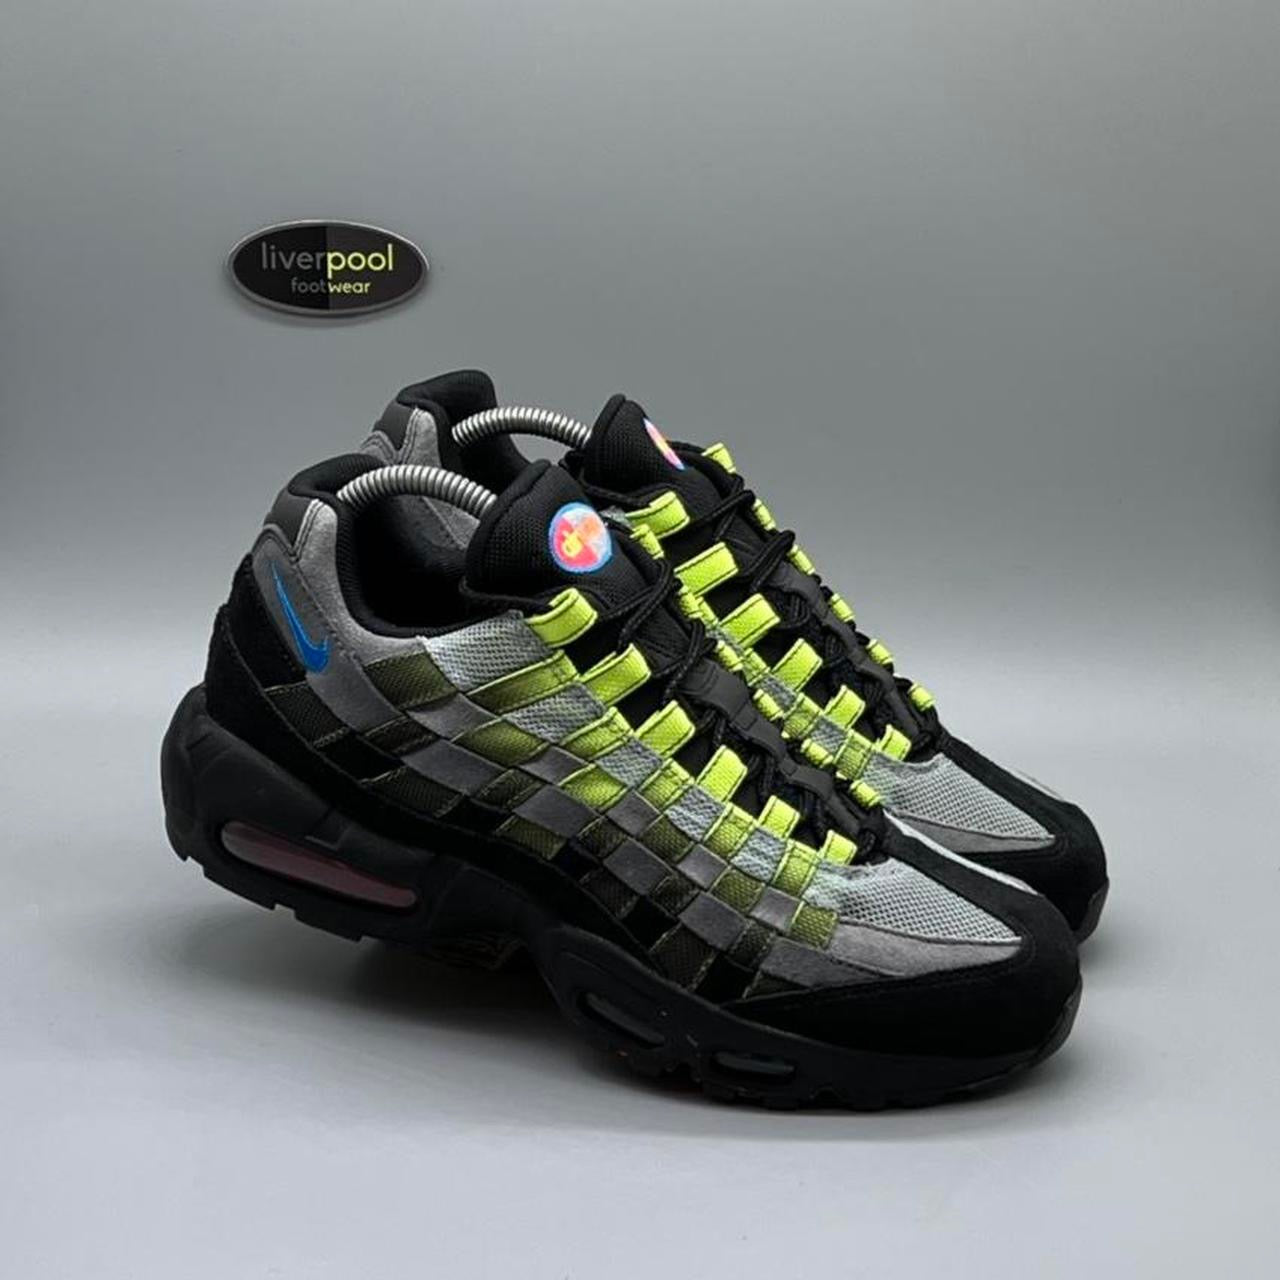 26.5cm Nike Air Max 95 Woven neon